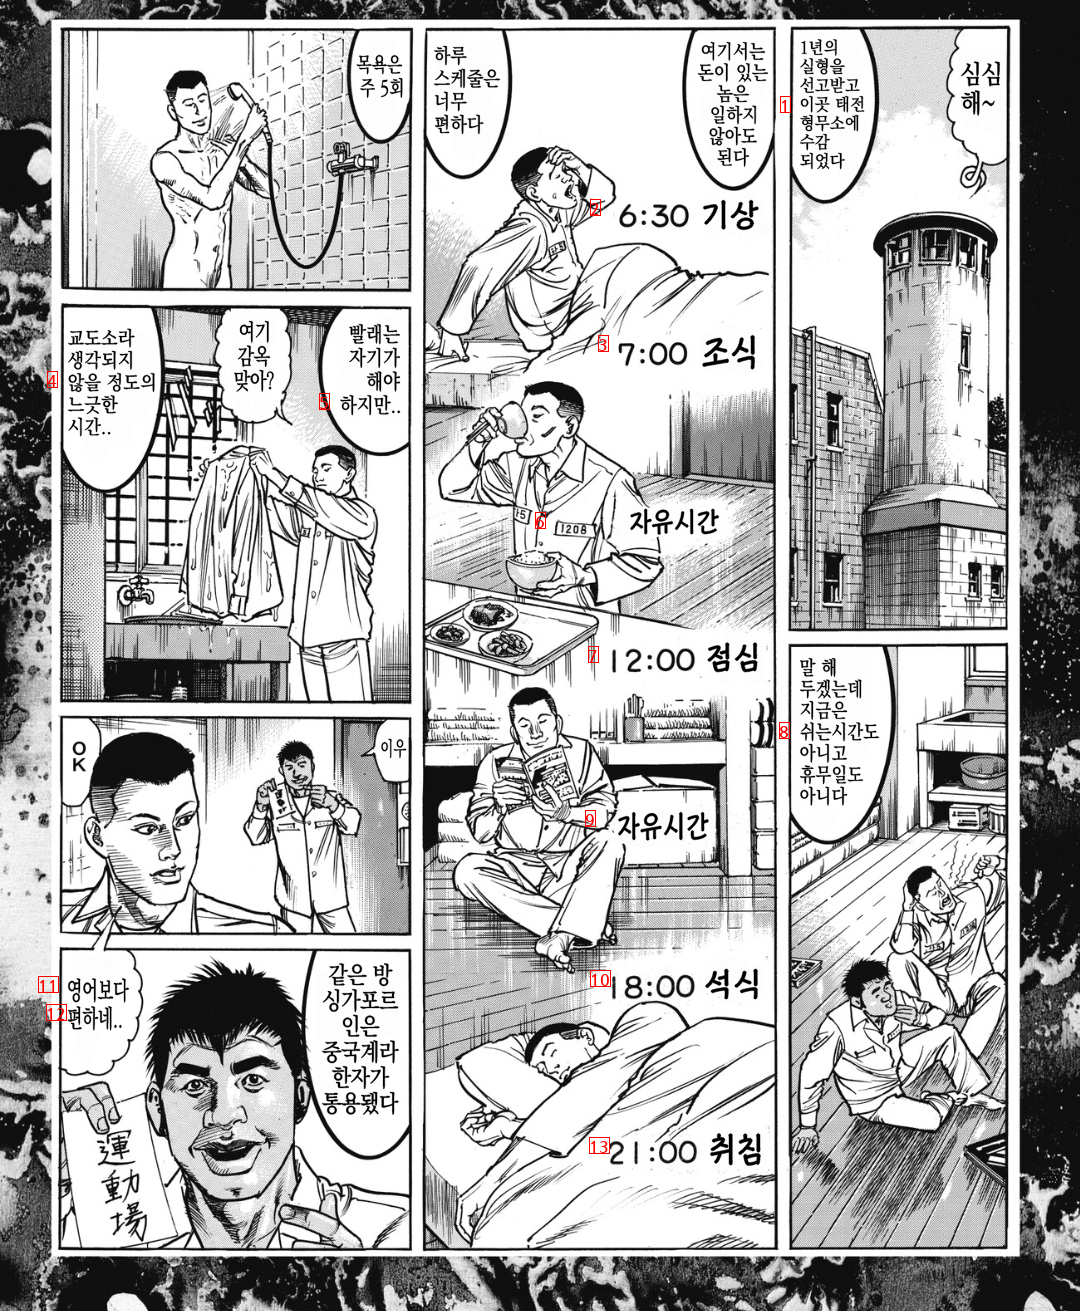 한국 교도소에 수감된 일본인 범죄자 만화.manhwa